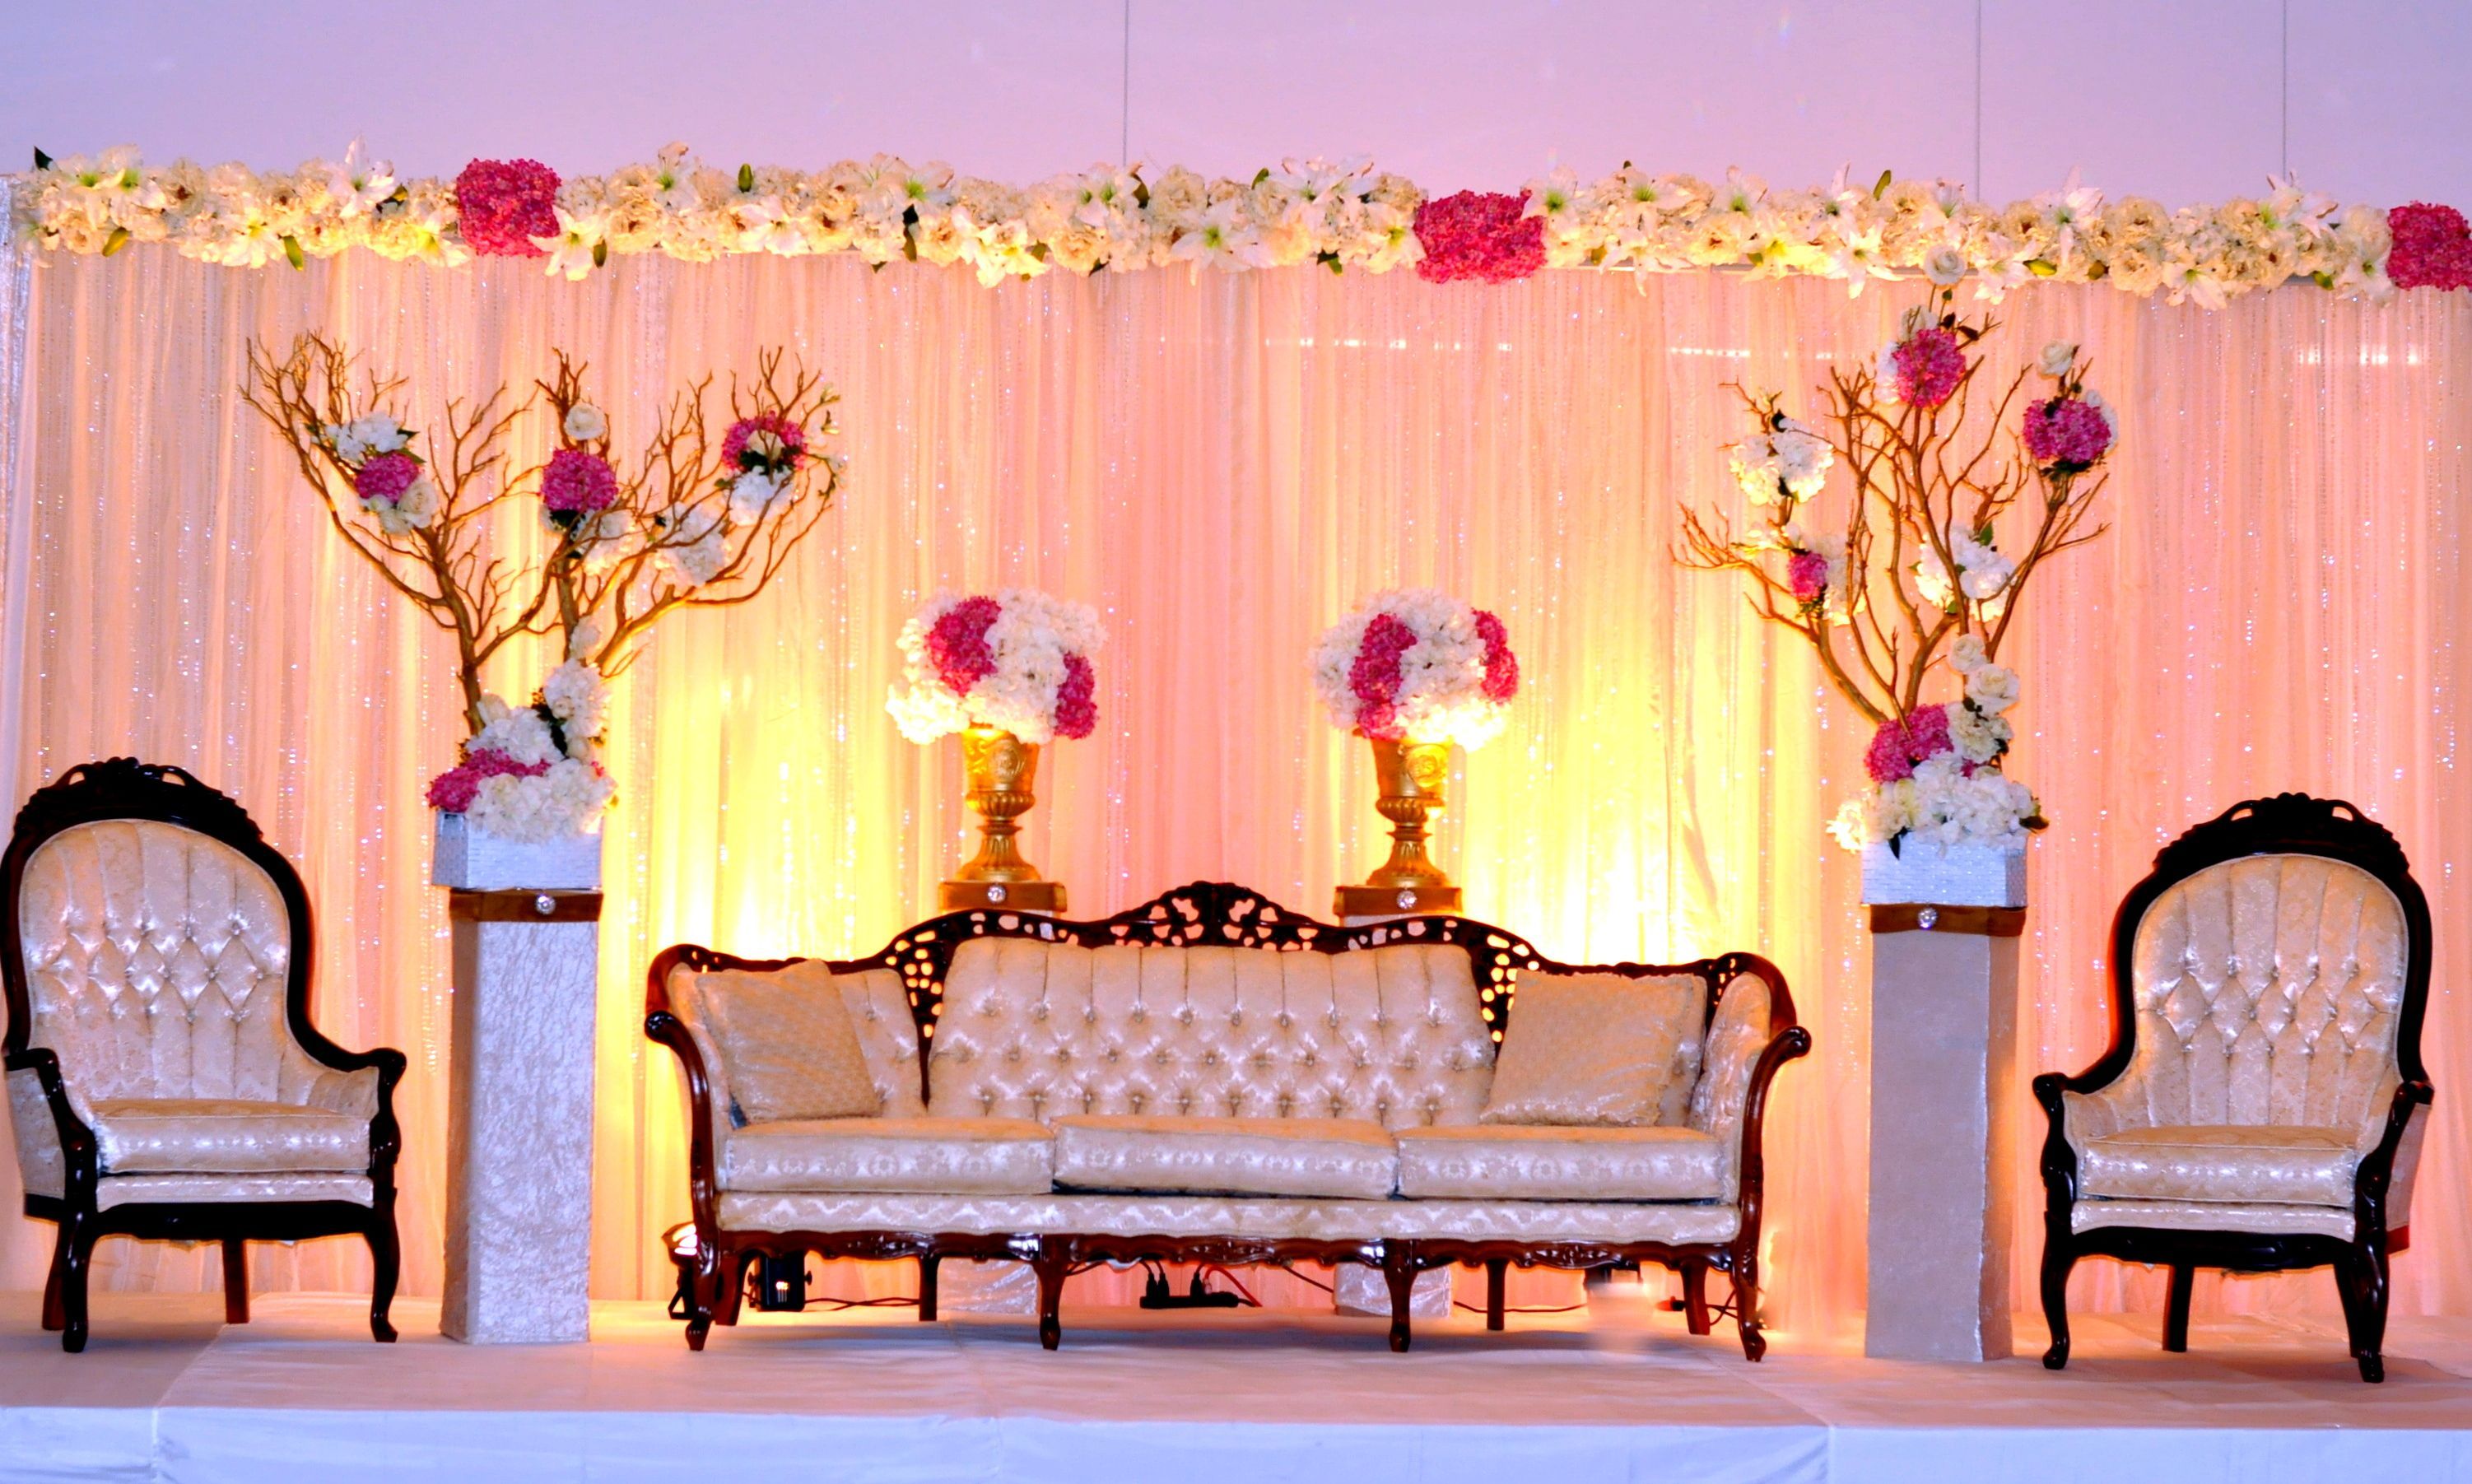 Ceremony backdrop, wedding setup .com